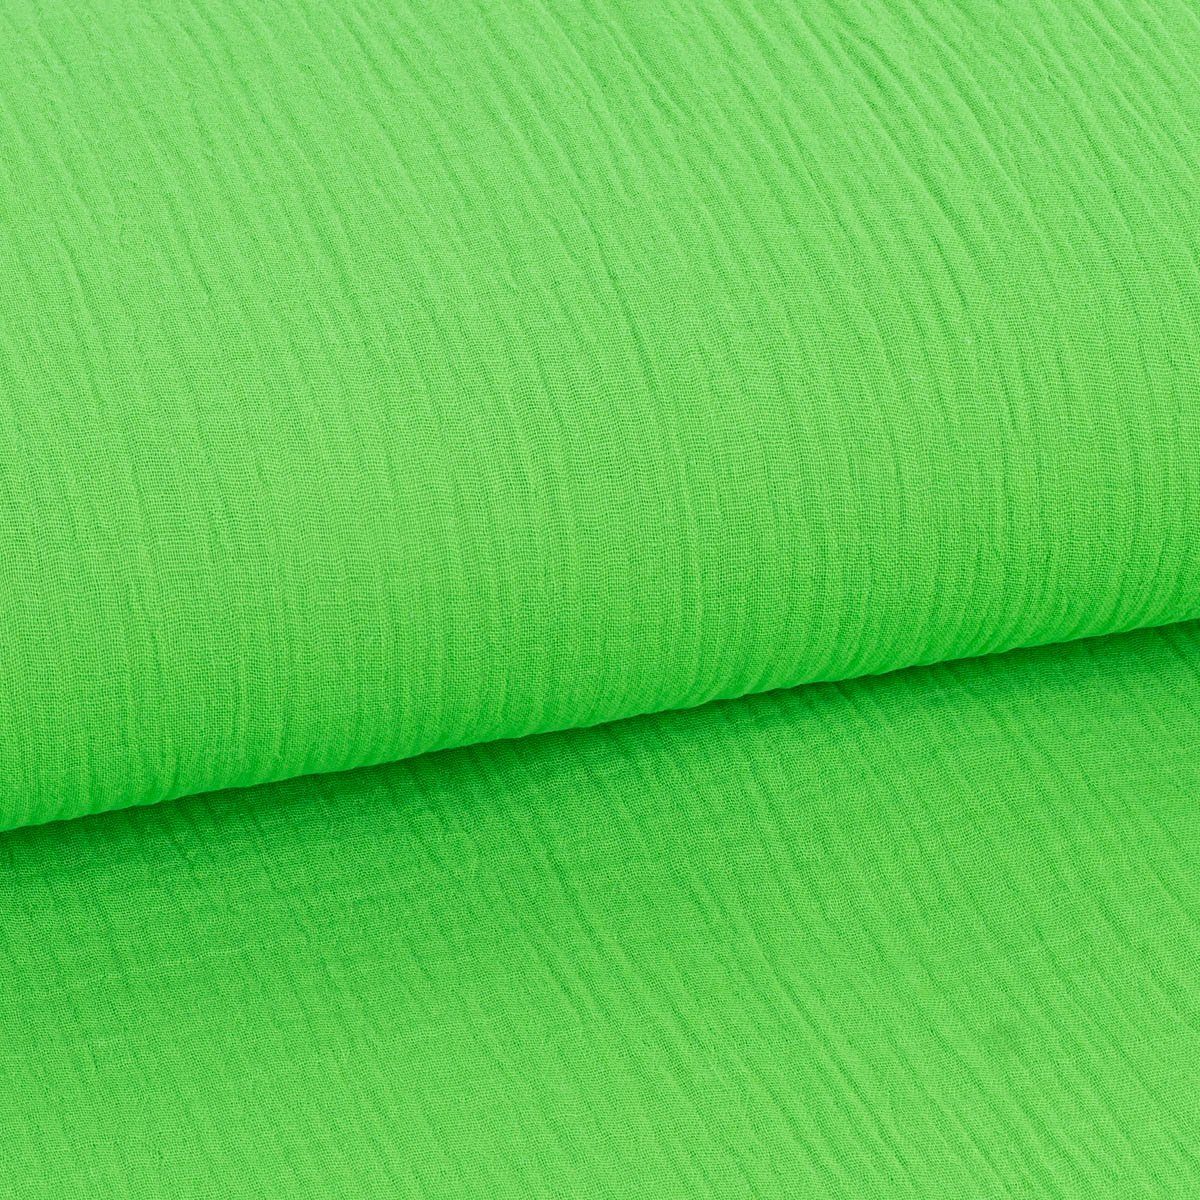 SCHÖNER LEBEN. Stoff Musselin Stoff Double Gauze NEON einfarbig grün 1,35m Breite, allergikergeeignet